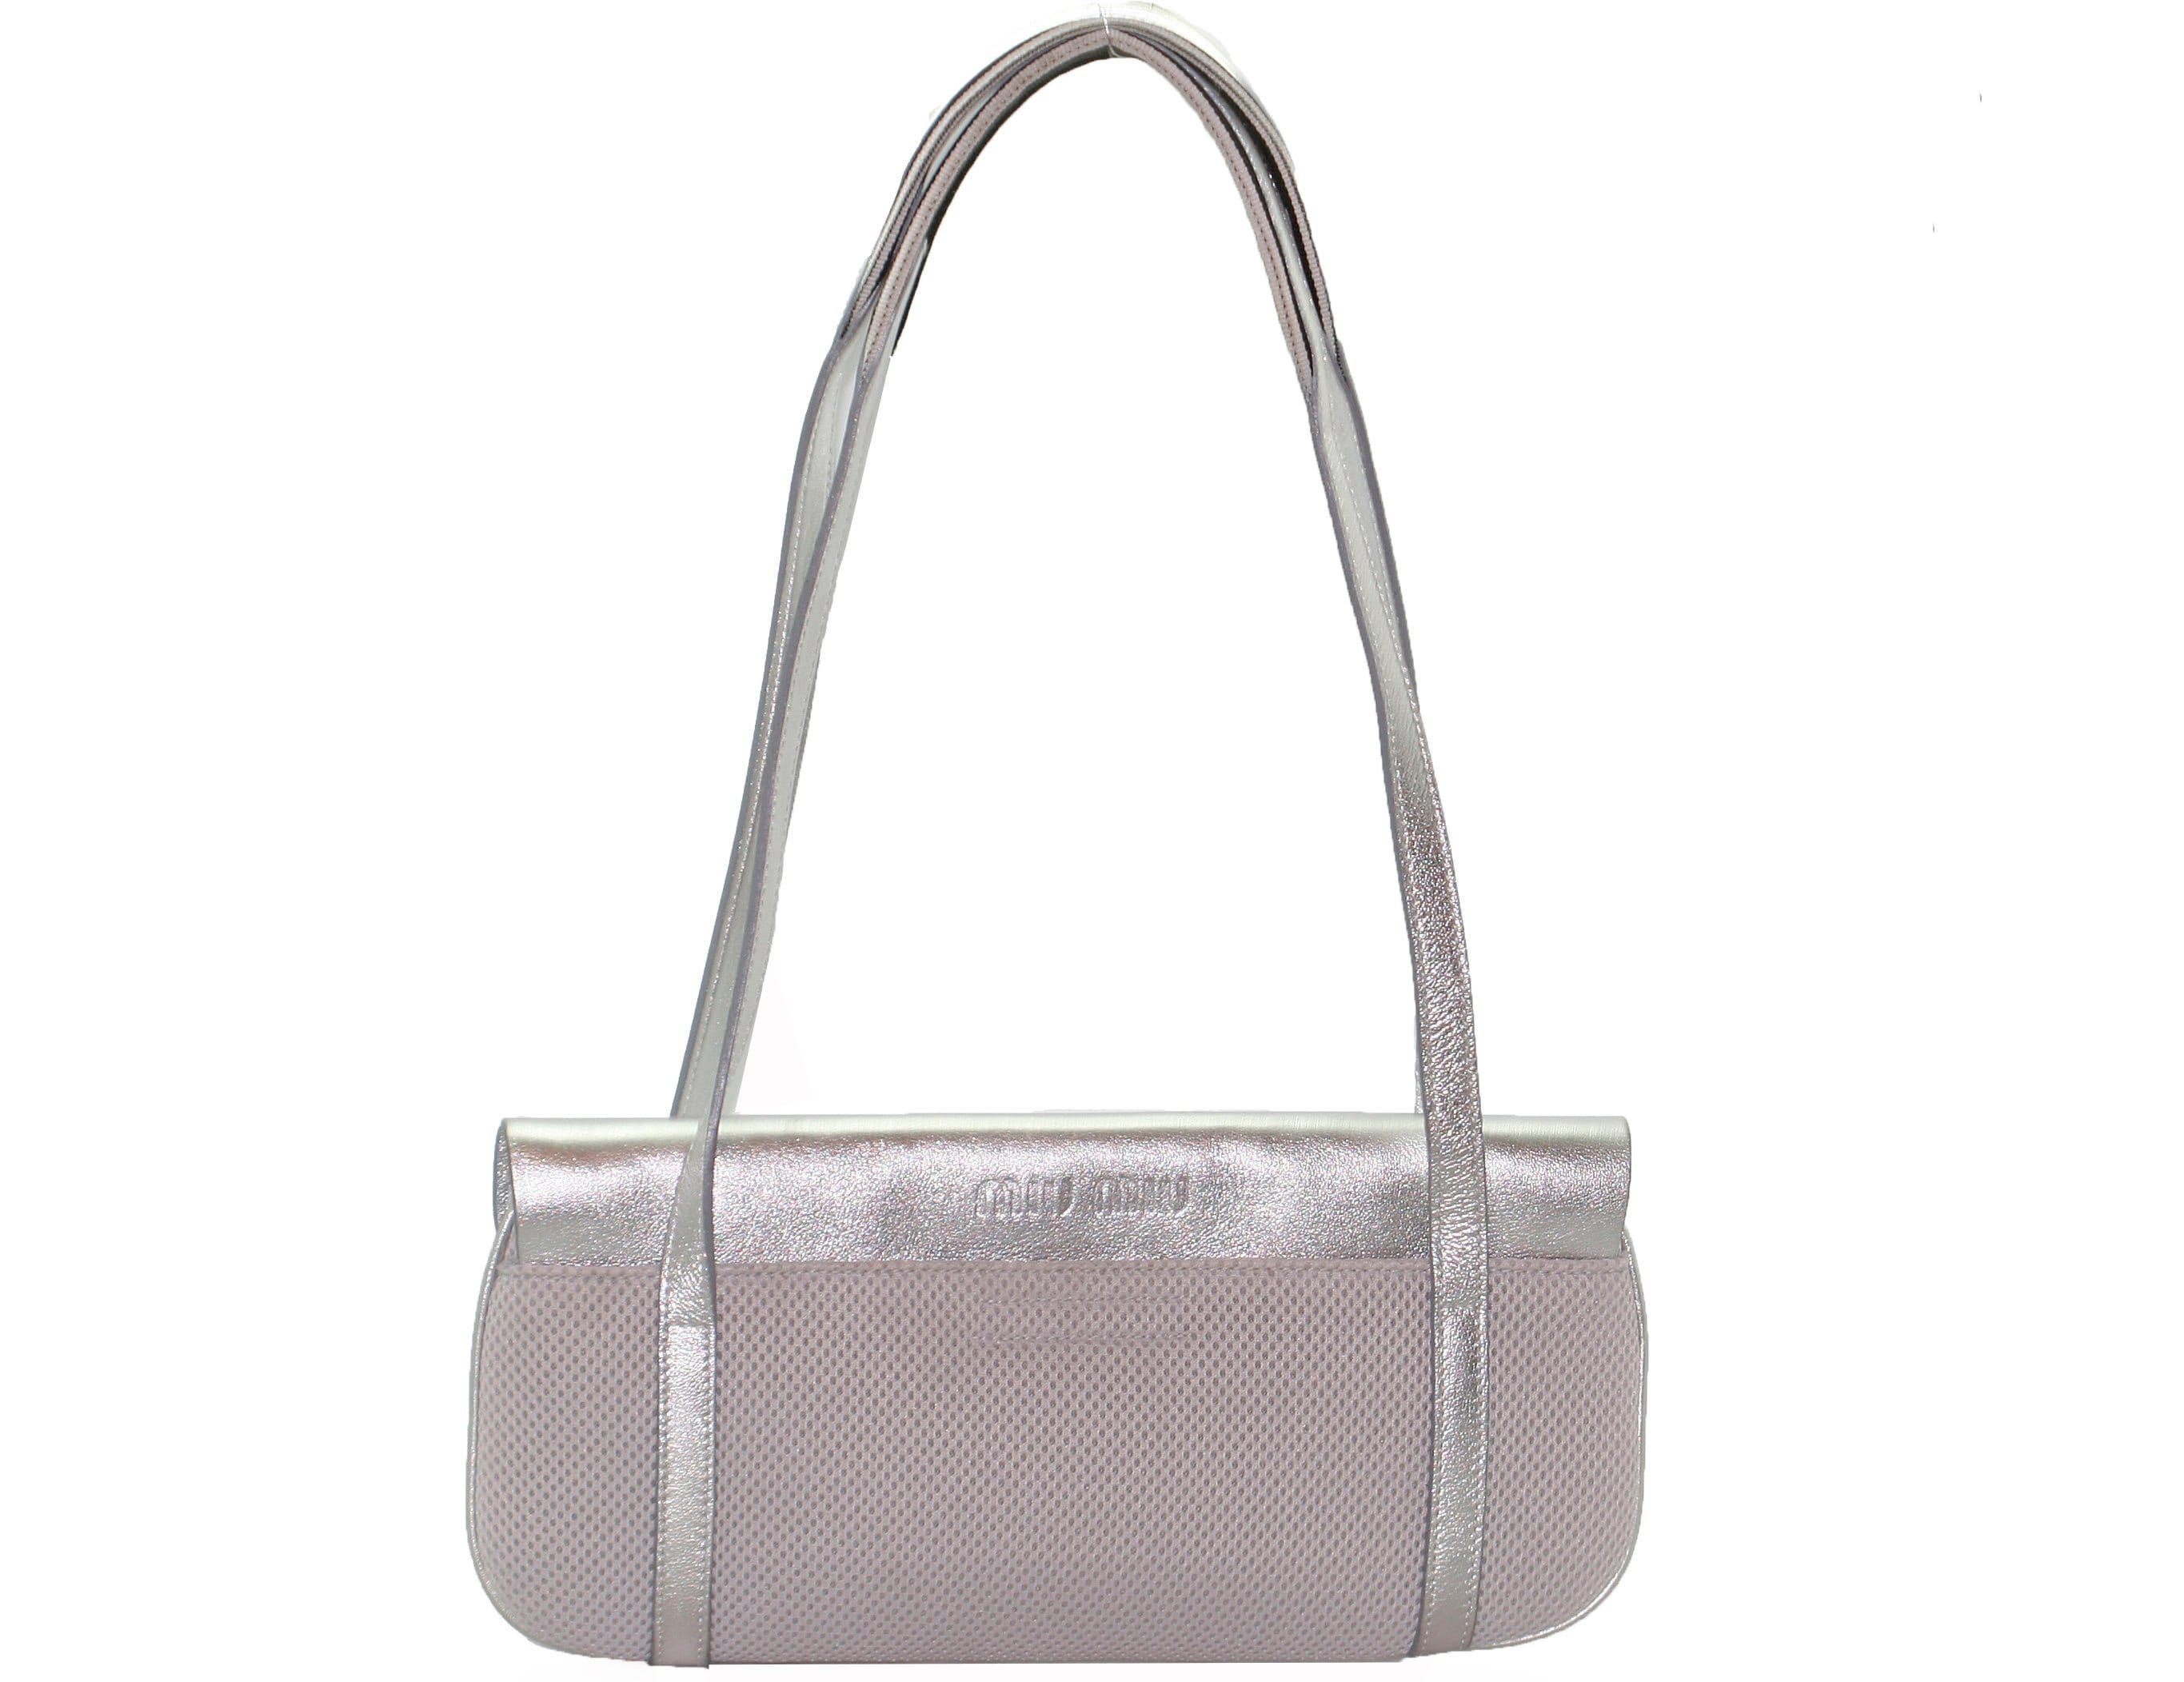 Miu Miu Y2K Style Silver Bag 